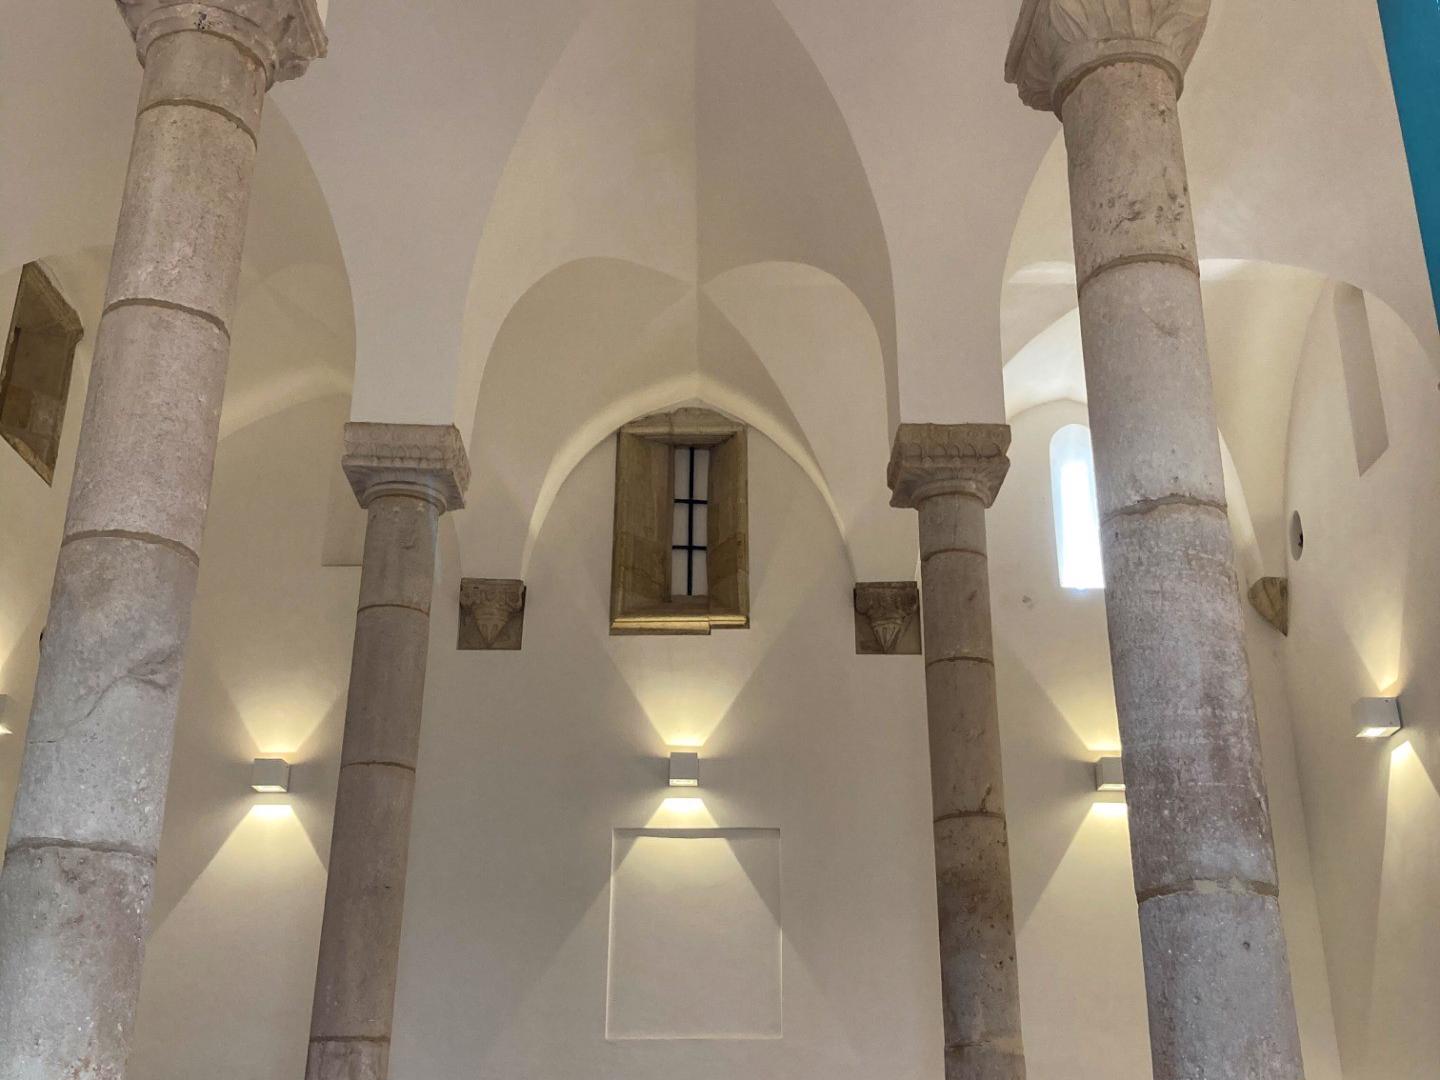 Sinagoga - A Sinagoga de Tomar foi construída entre 1430 e 1460, por ordem do Infante D. Henrique, que sempre manteve uma relação de proximidade e mesmo de proteção para com a comunidade judaica, que contribuía generosamente para a grande empresa dos Descobrimentos.